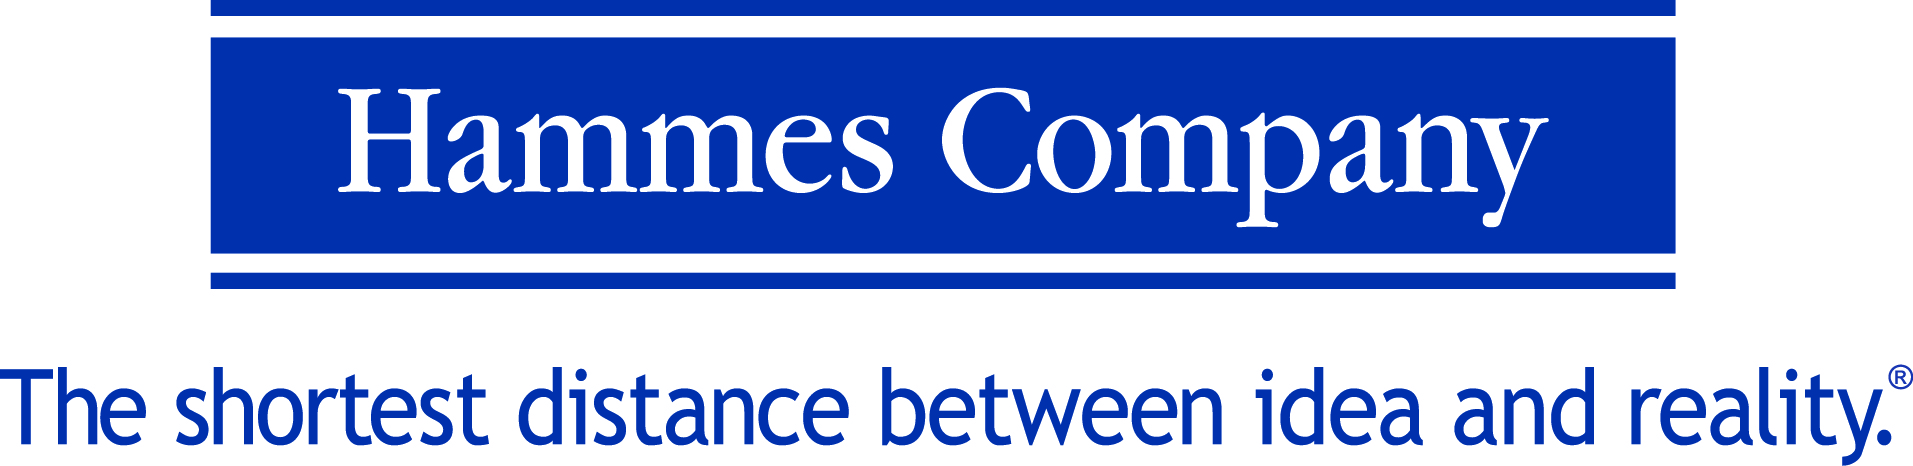 Hammes Company logo